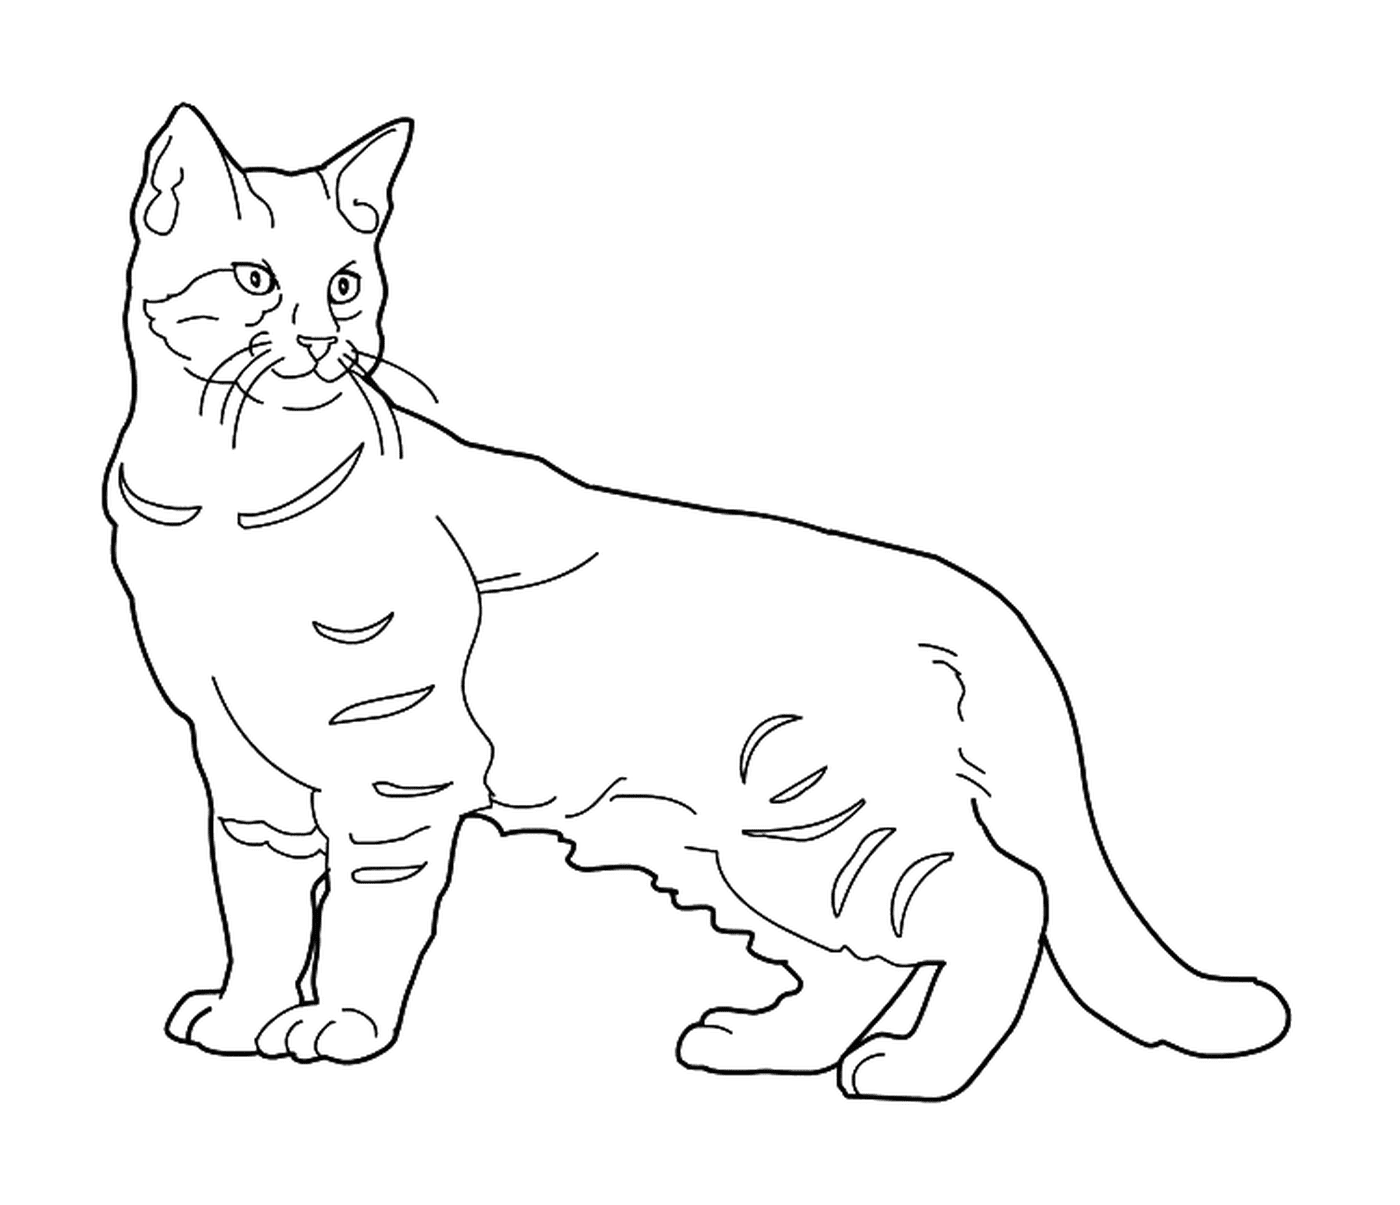   Un Pixie Bob, un chat avec une queue courte 